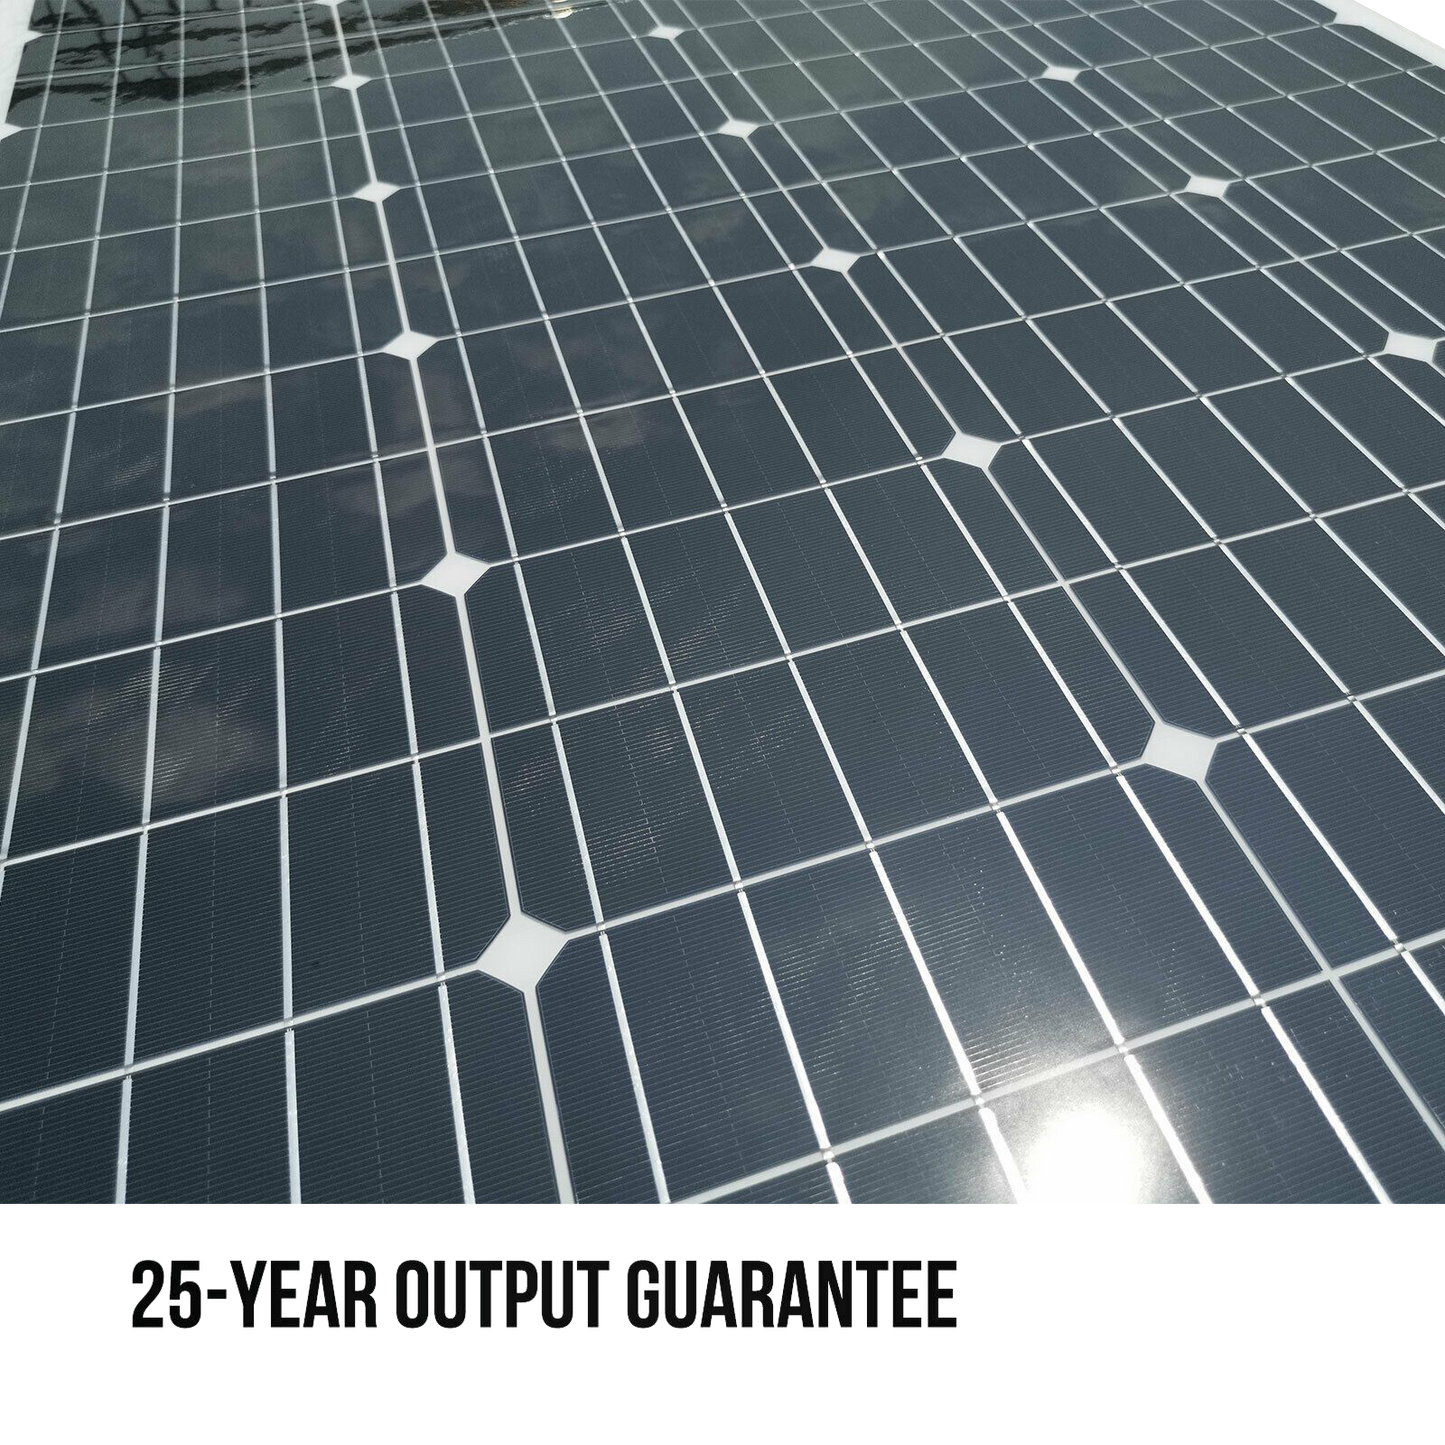 200W Flexible Solar Panel sample - OkSolar™